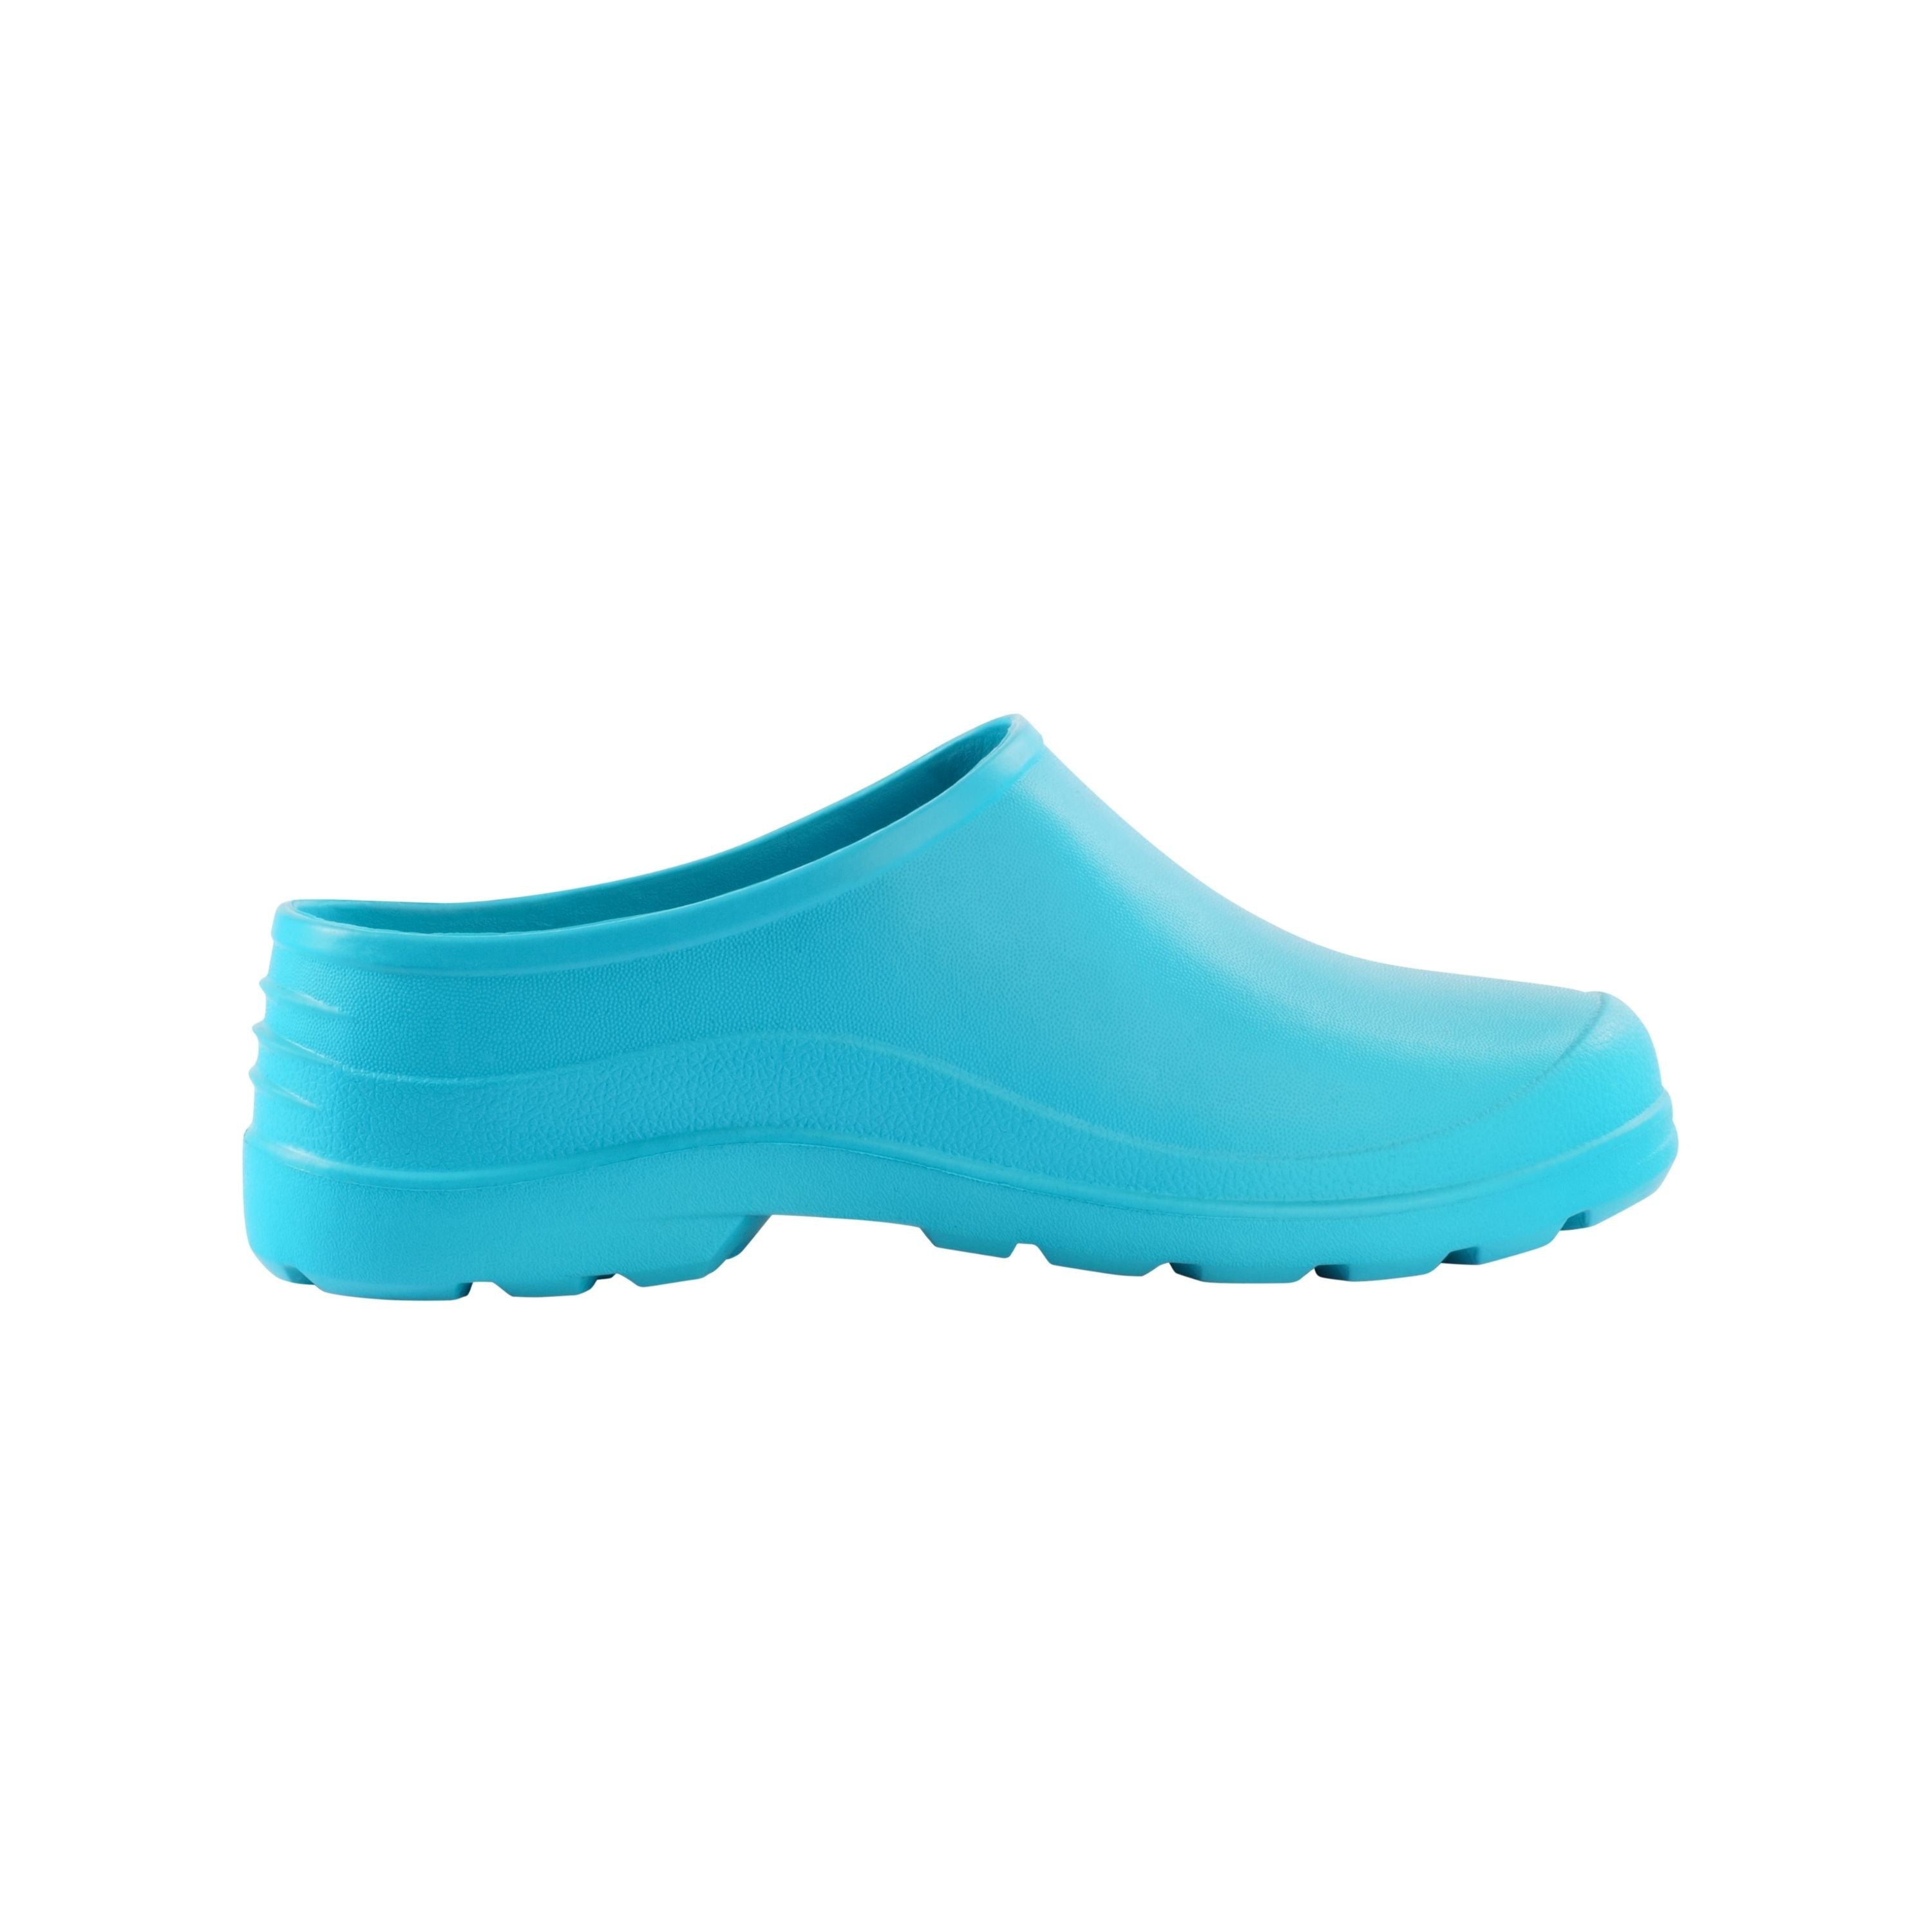 “X-Clap” Boots - Unisex